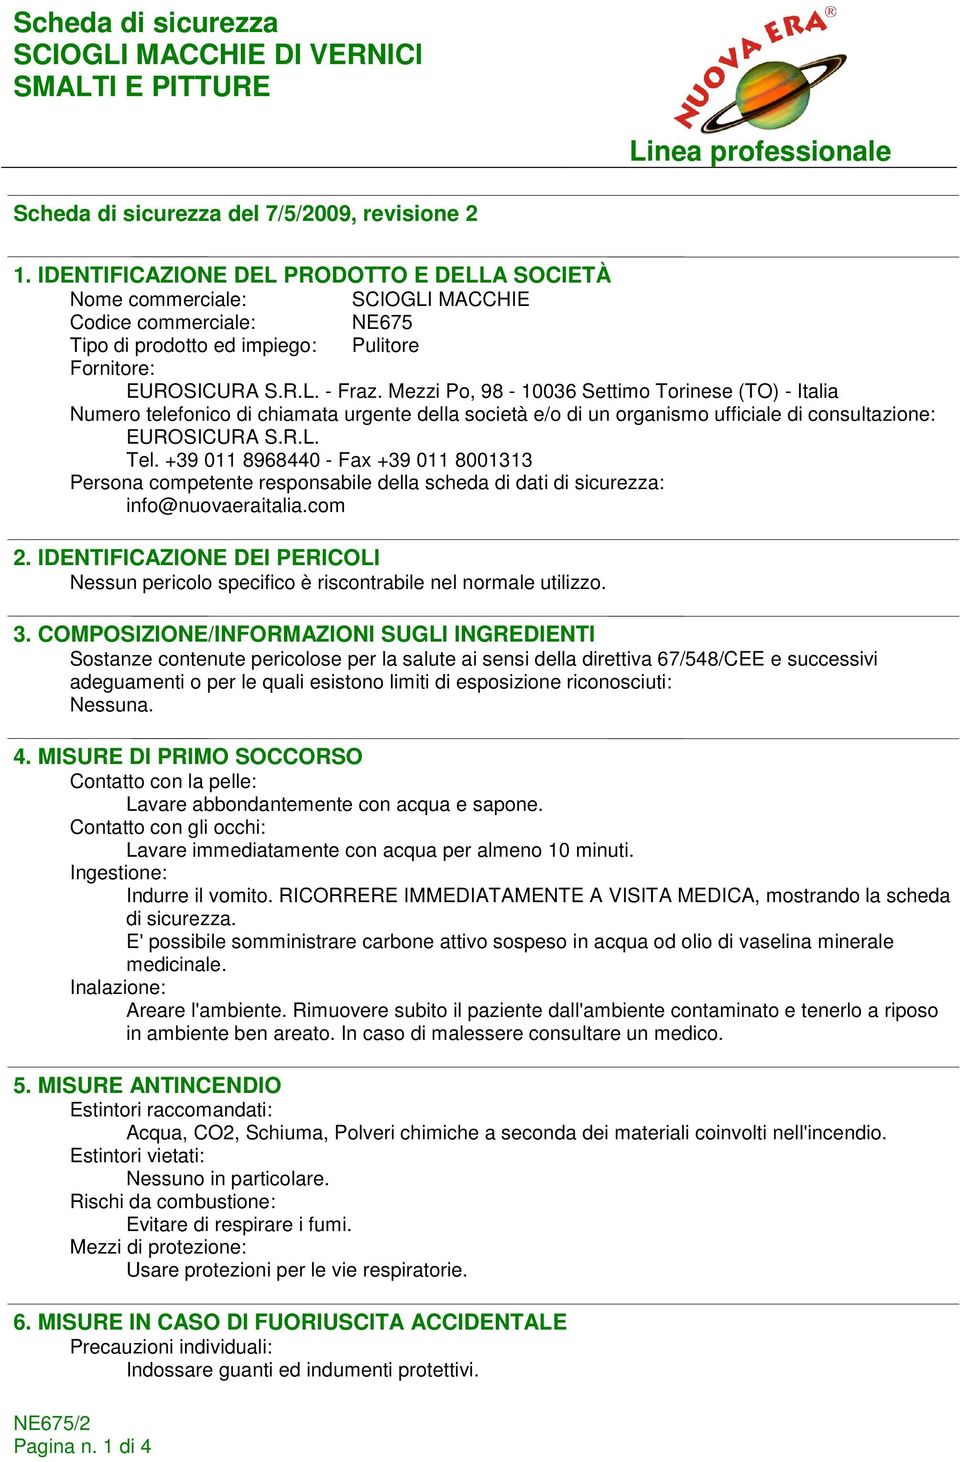 Mezzi Po, 98-10036 Settimo Torinese (TO) - Italia Numero telefonico di chiamata urgente della società e/o di un organismo ufficiale di consultazione: EUROSICURA S.R.L. Tel.